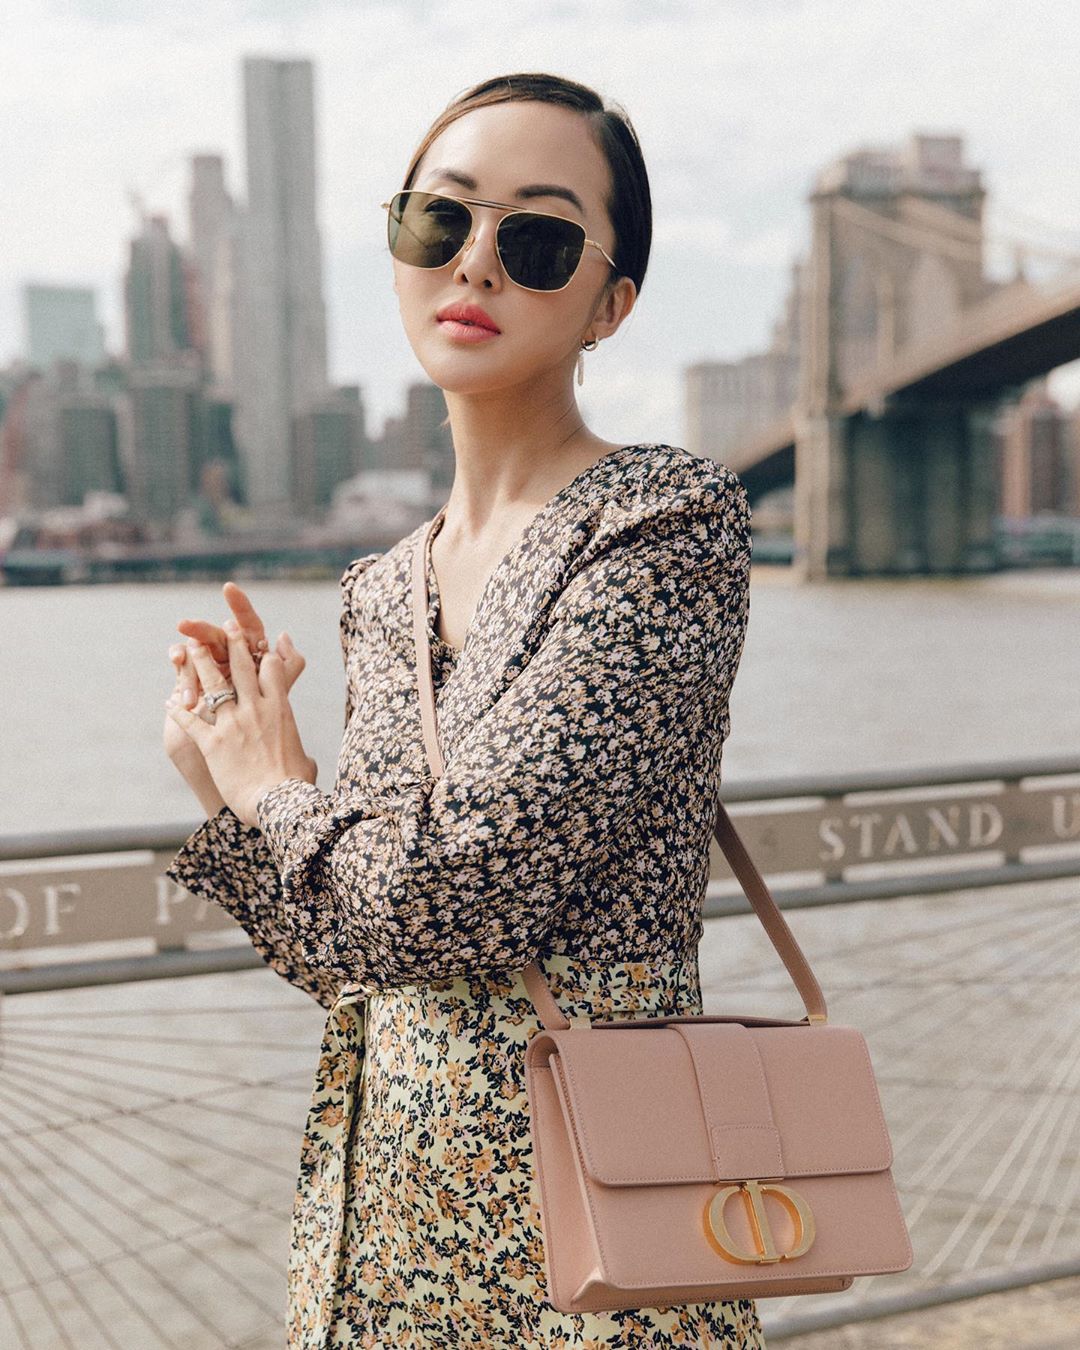 Phụ kiện thời trang cung xử nữ - Chriselle Lim đeo túi xách Dior màu hồng